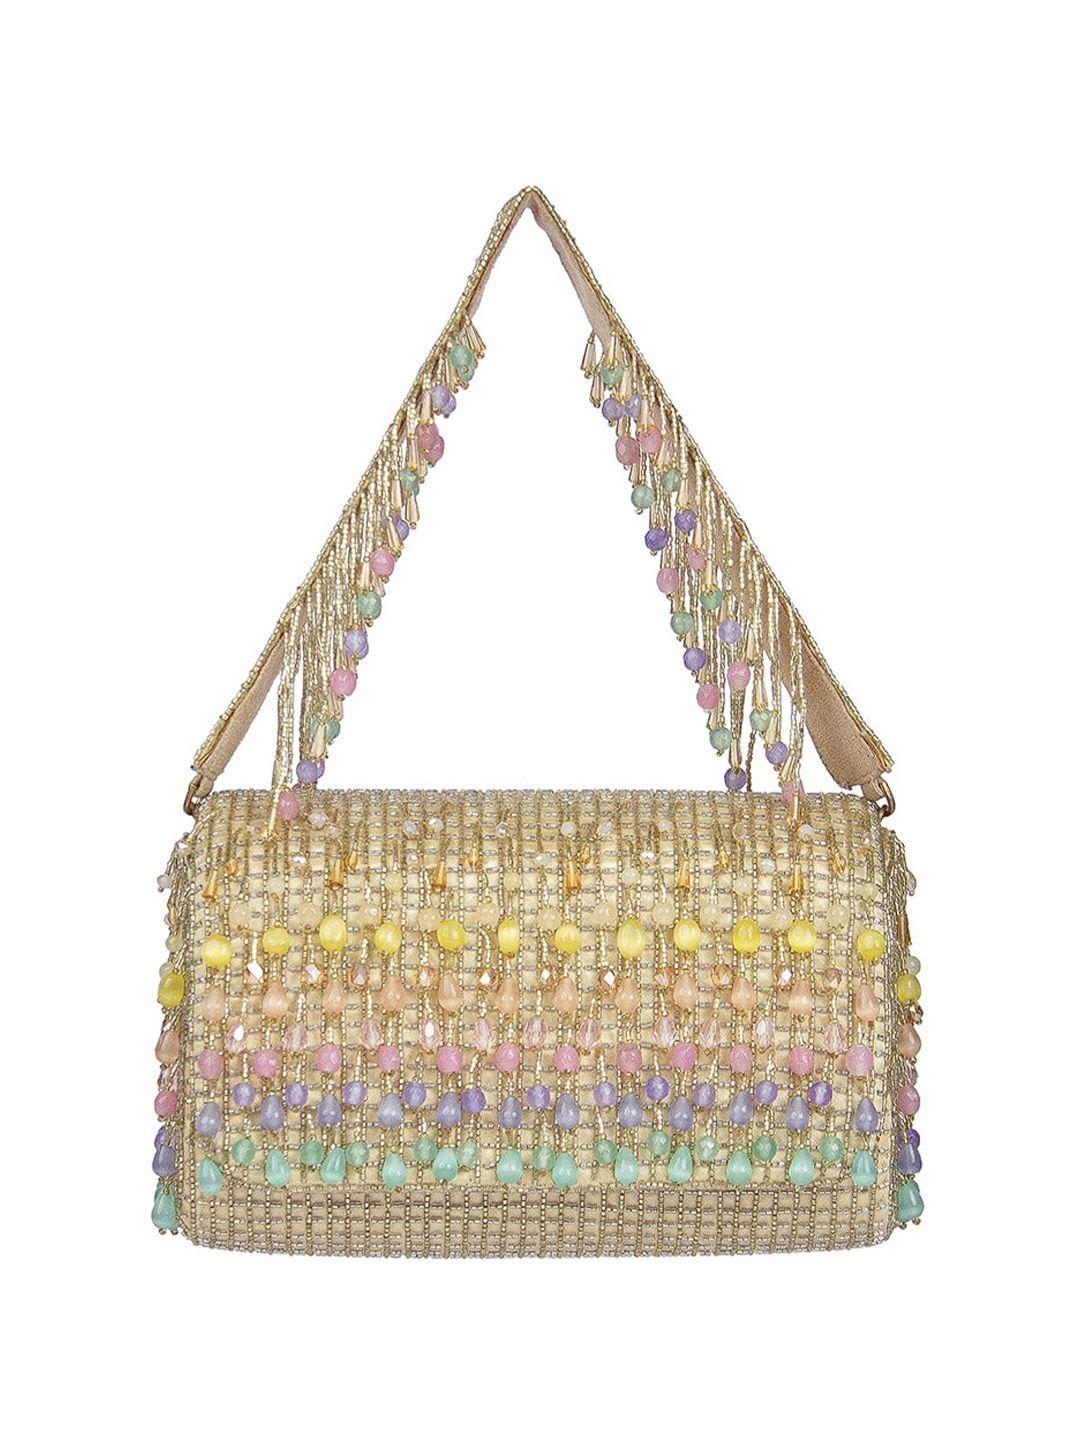 lovetobag embellished purse clutch